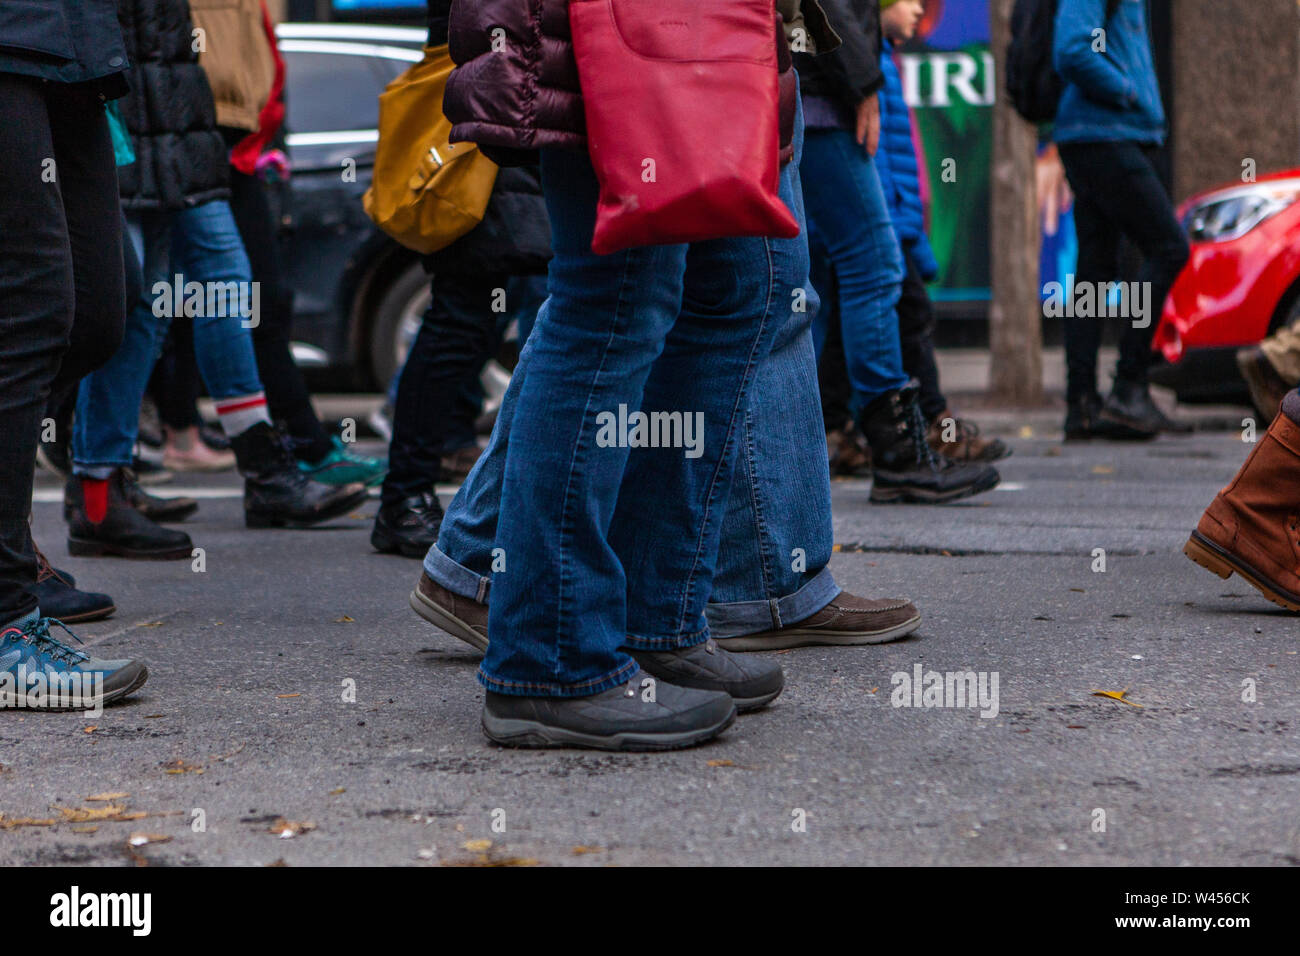 Un basso livello di visualizzare su un ampio gruppo di eco-attivisti a camminare su una strada urbana, gli arti inferiori di persone che indossano jeans e scarpe come si uniscono per il cambiamento. Foto Stock